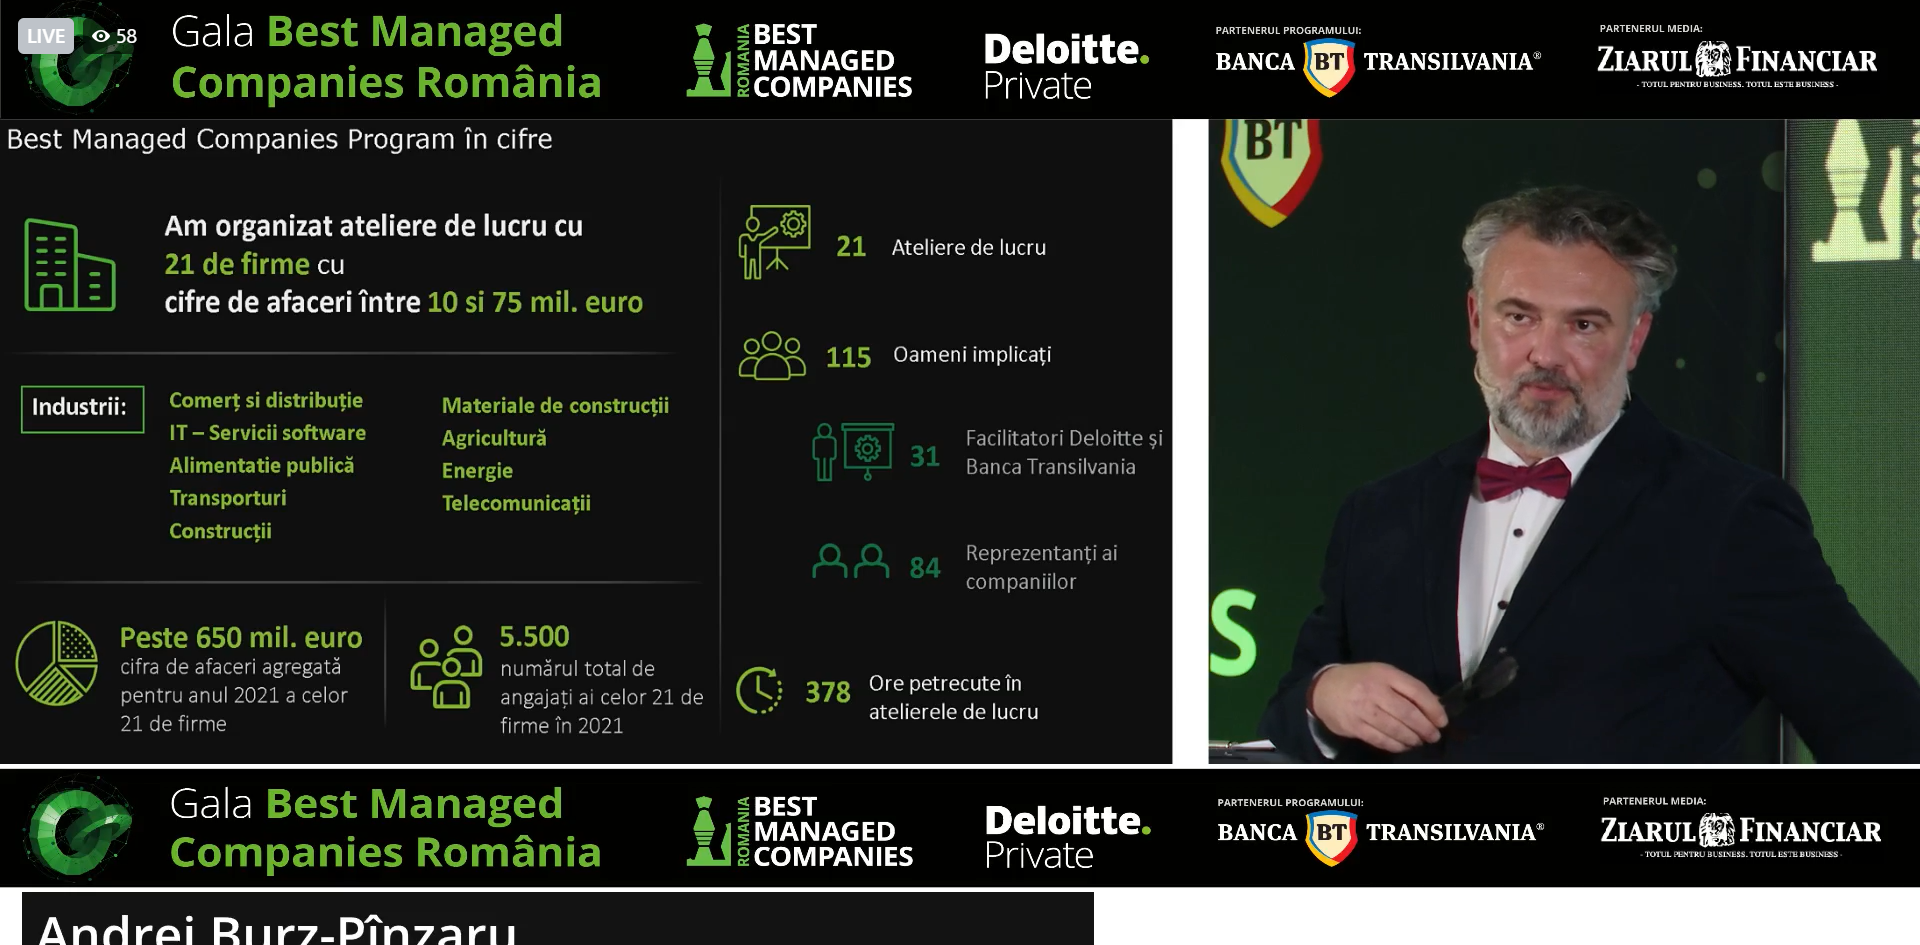 Andrei Burz-Pînzaru, Deloitte: Companii cu cifră totală de afaceri de 650 mil. euro şi 5.500 de angajaţi în total au participat la programul Best Managed Companies în România